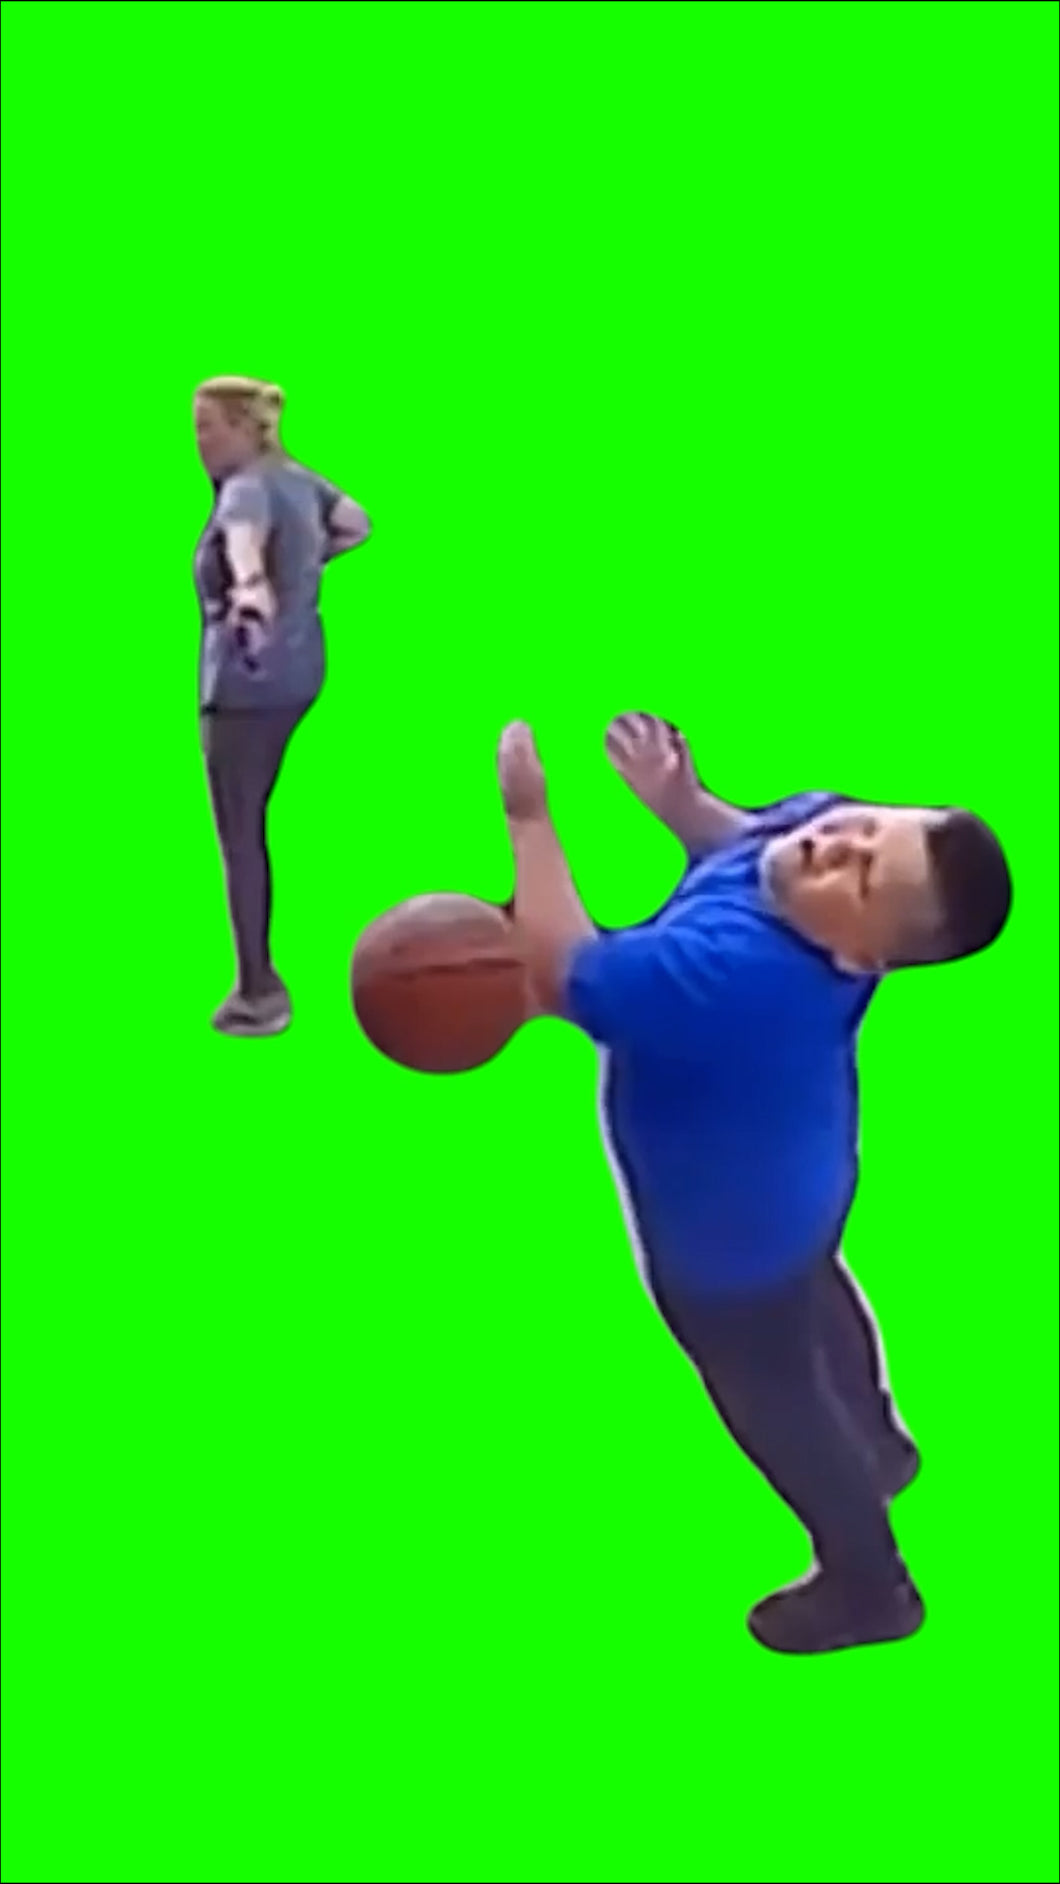 Dad Throws Basketball at Kid Fail (Green Screen)